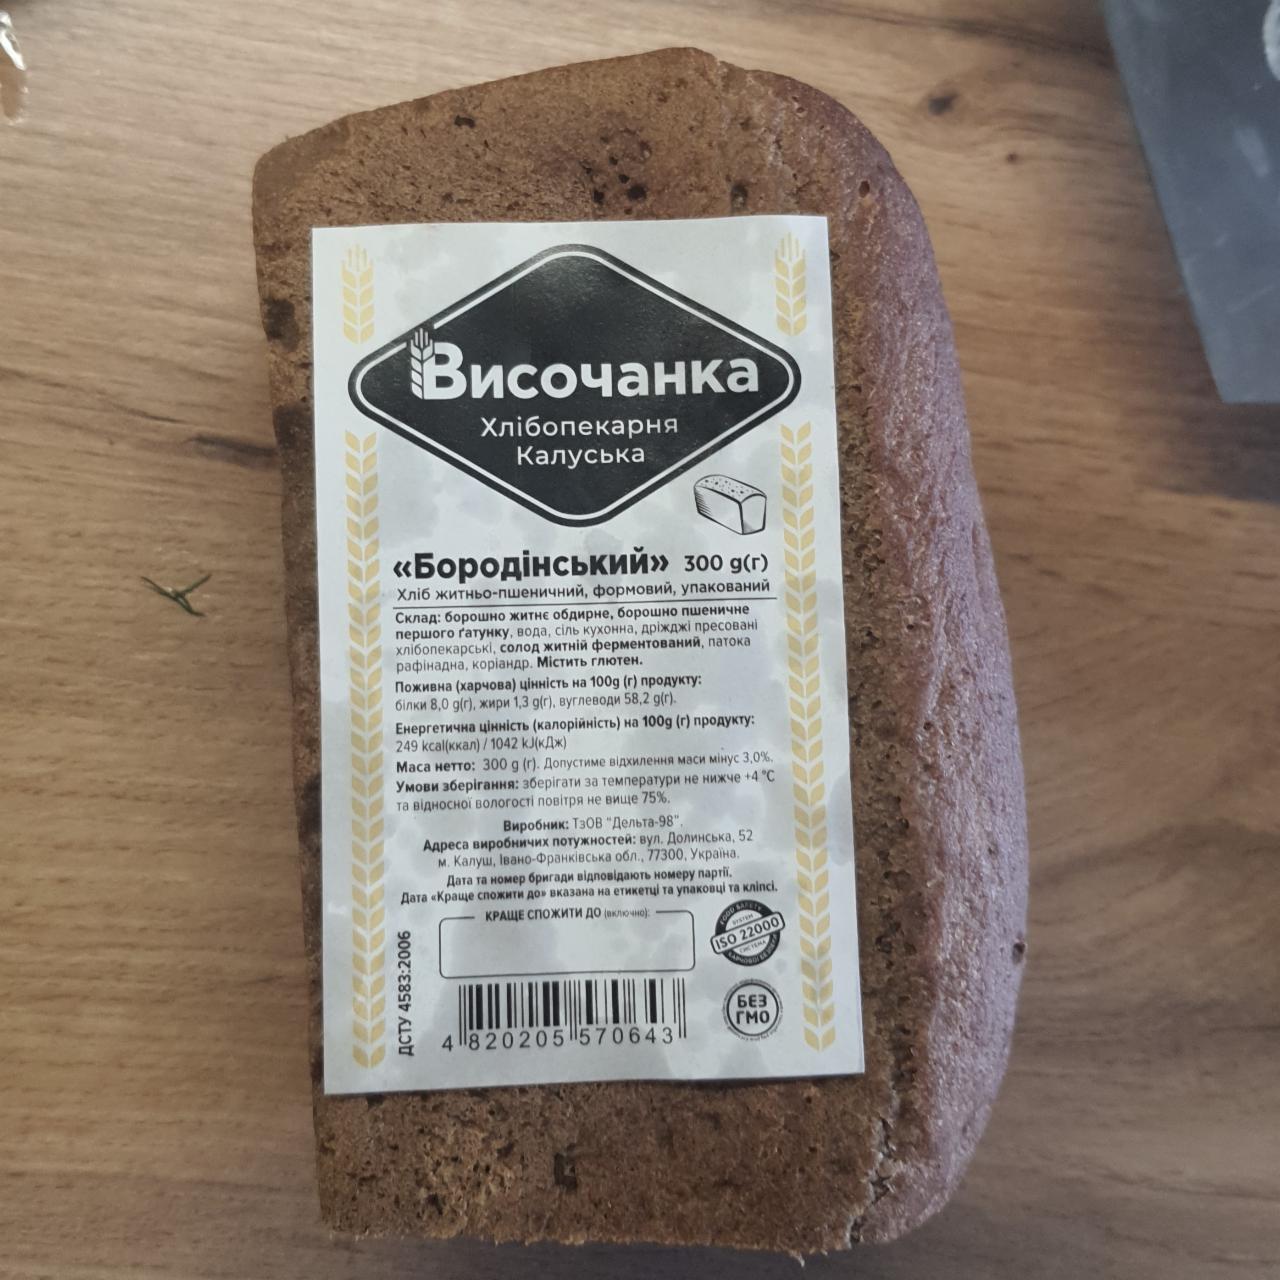 Фото - Хлеб ржано-пшеничный Бородинский Височанка